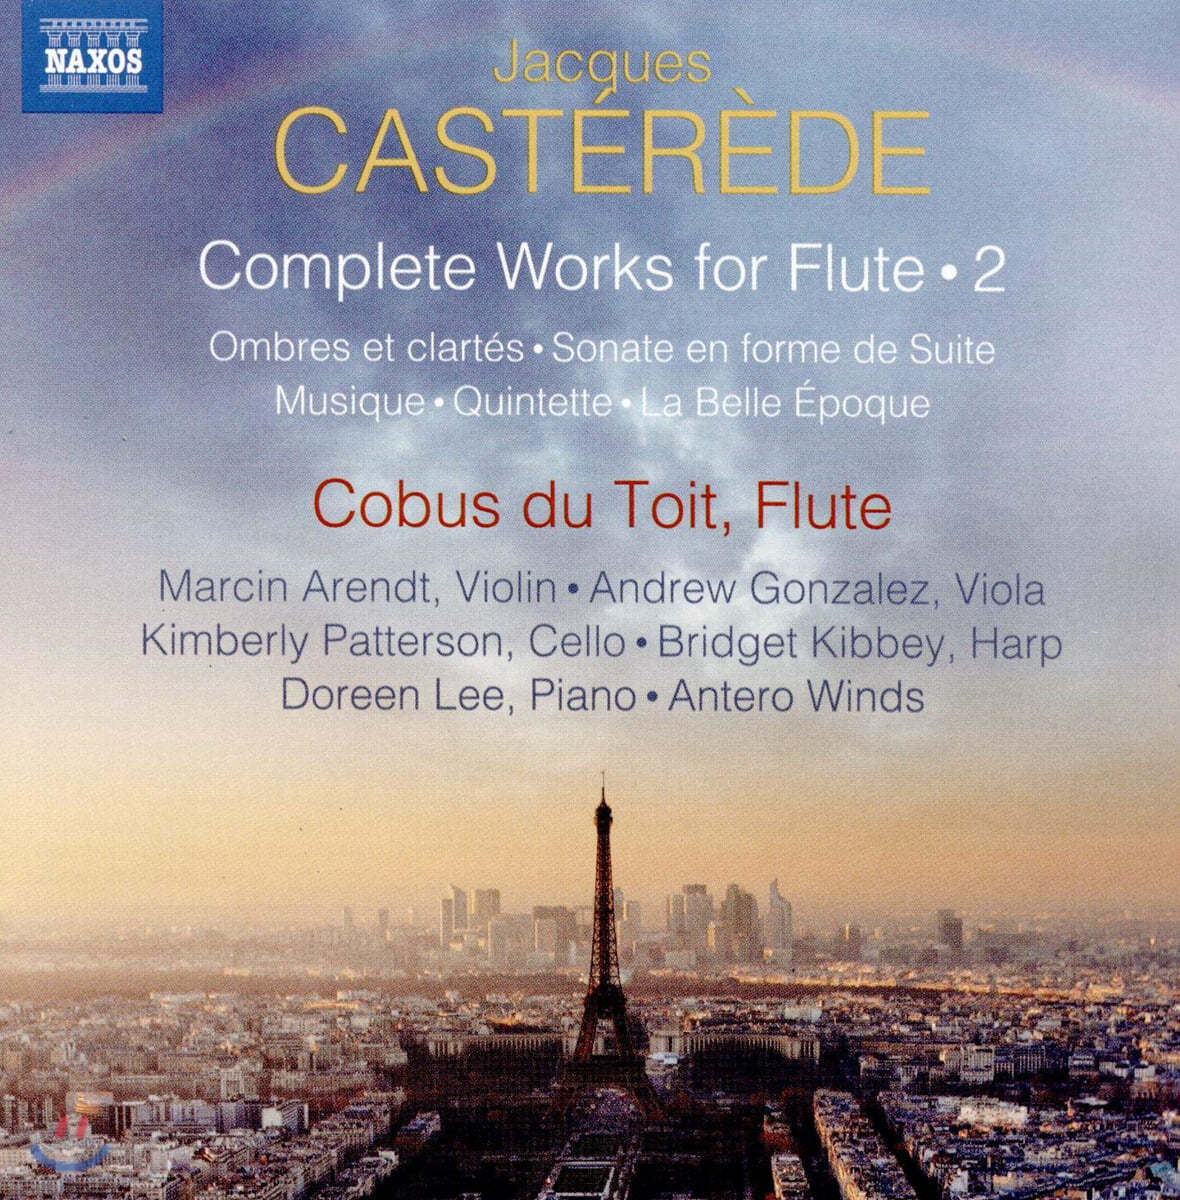 Cobus du Toit 자크 카스테레데: 플루트를 위한 작품 2집 (Jacques Casterede: Complete Works for Flute, Vol. 2)